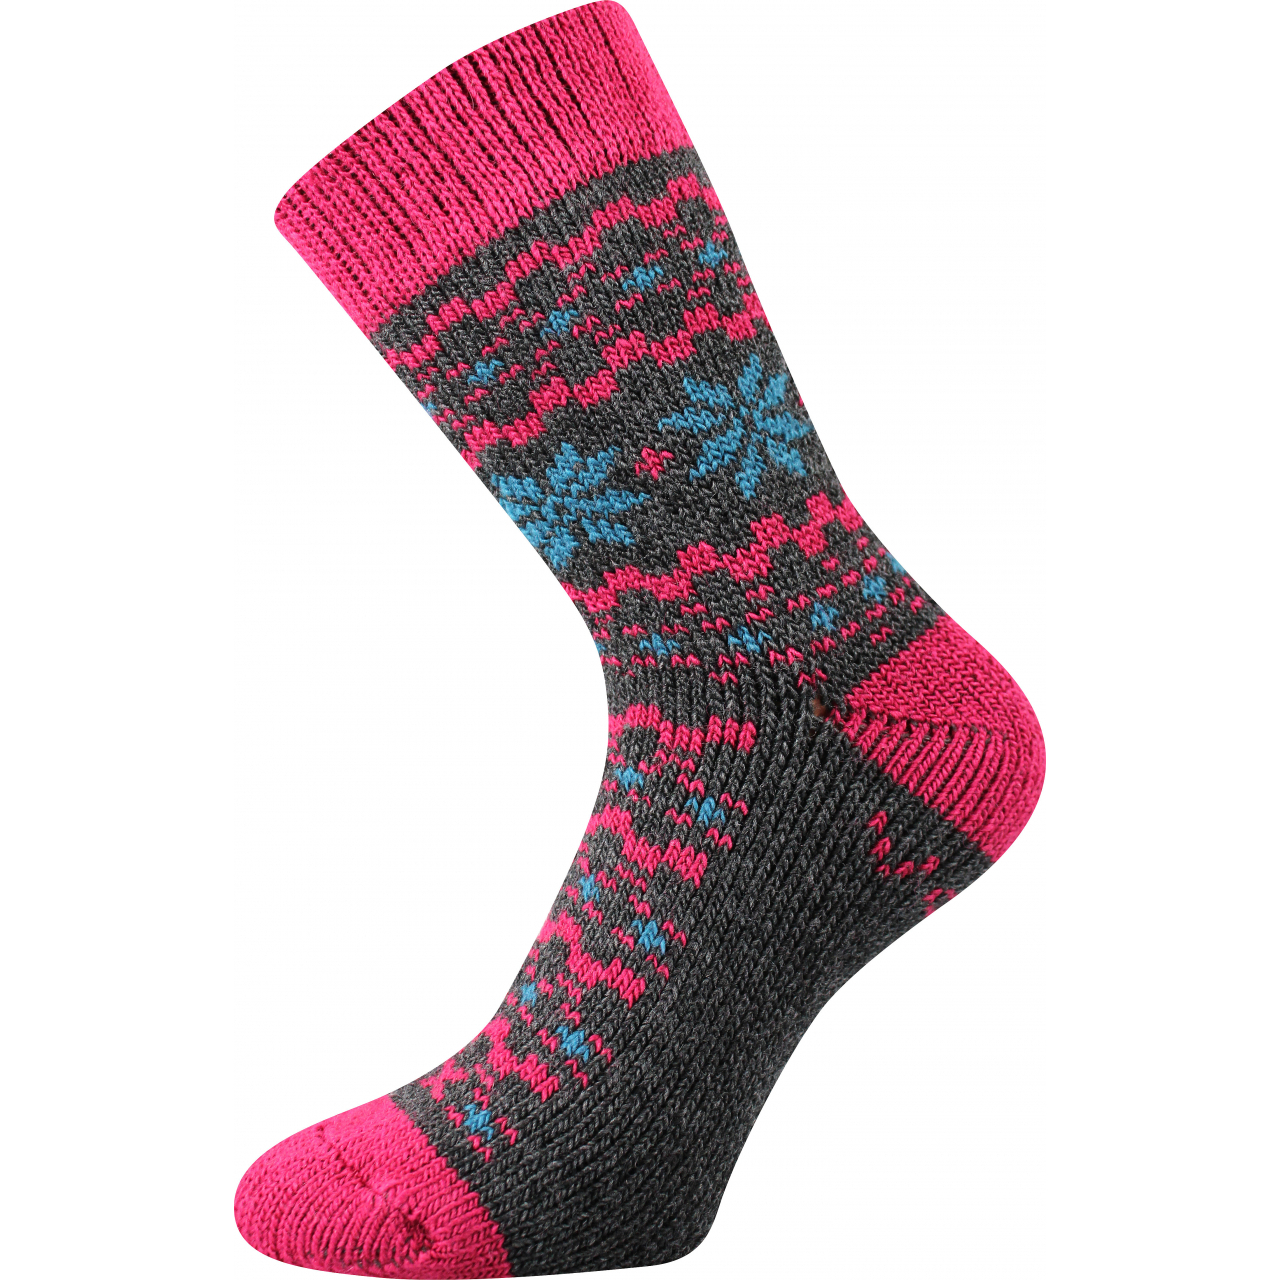 Ponožky unisex zimní Voxx Trondelag - šedé-růžové, 39-42